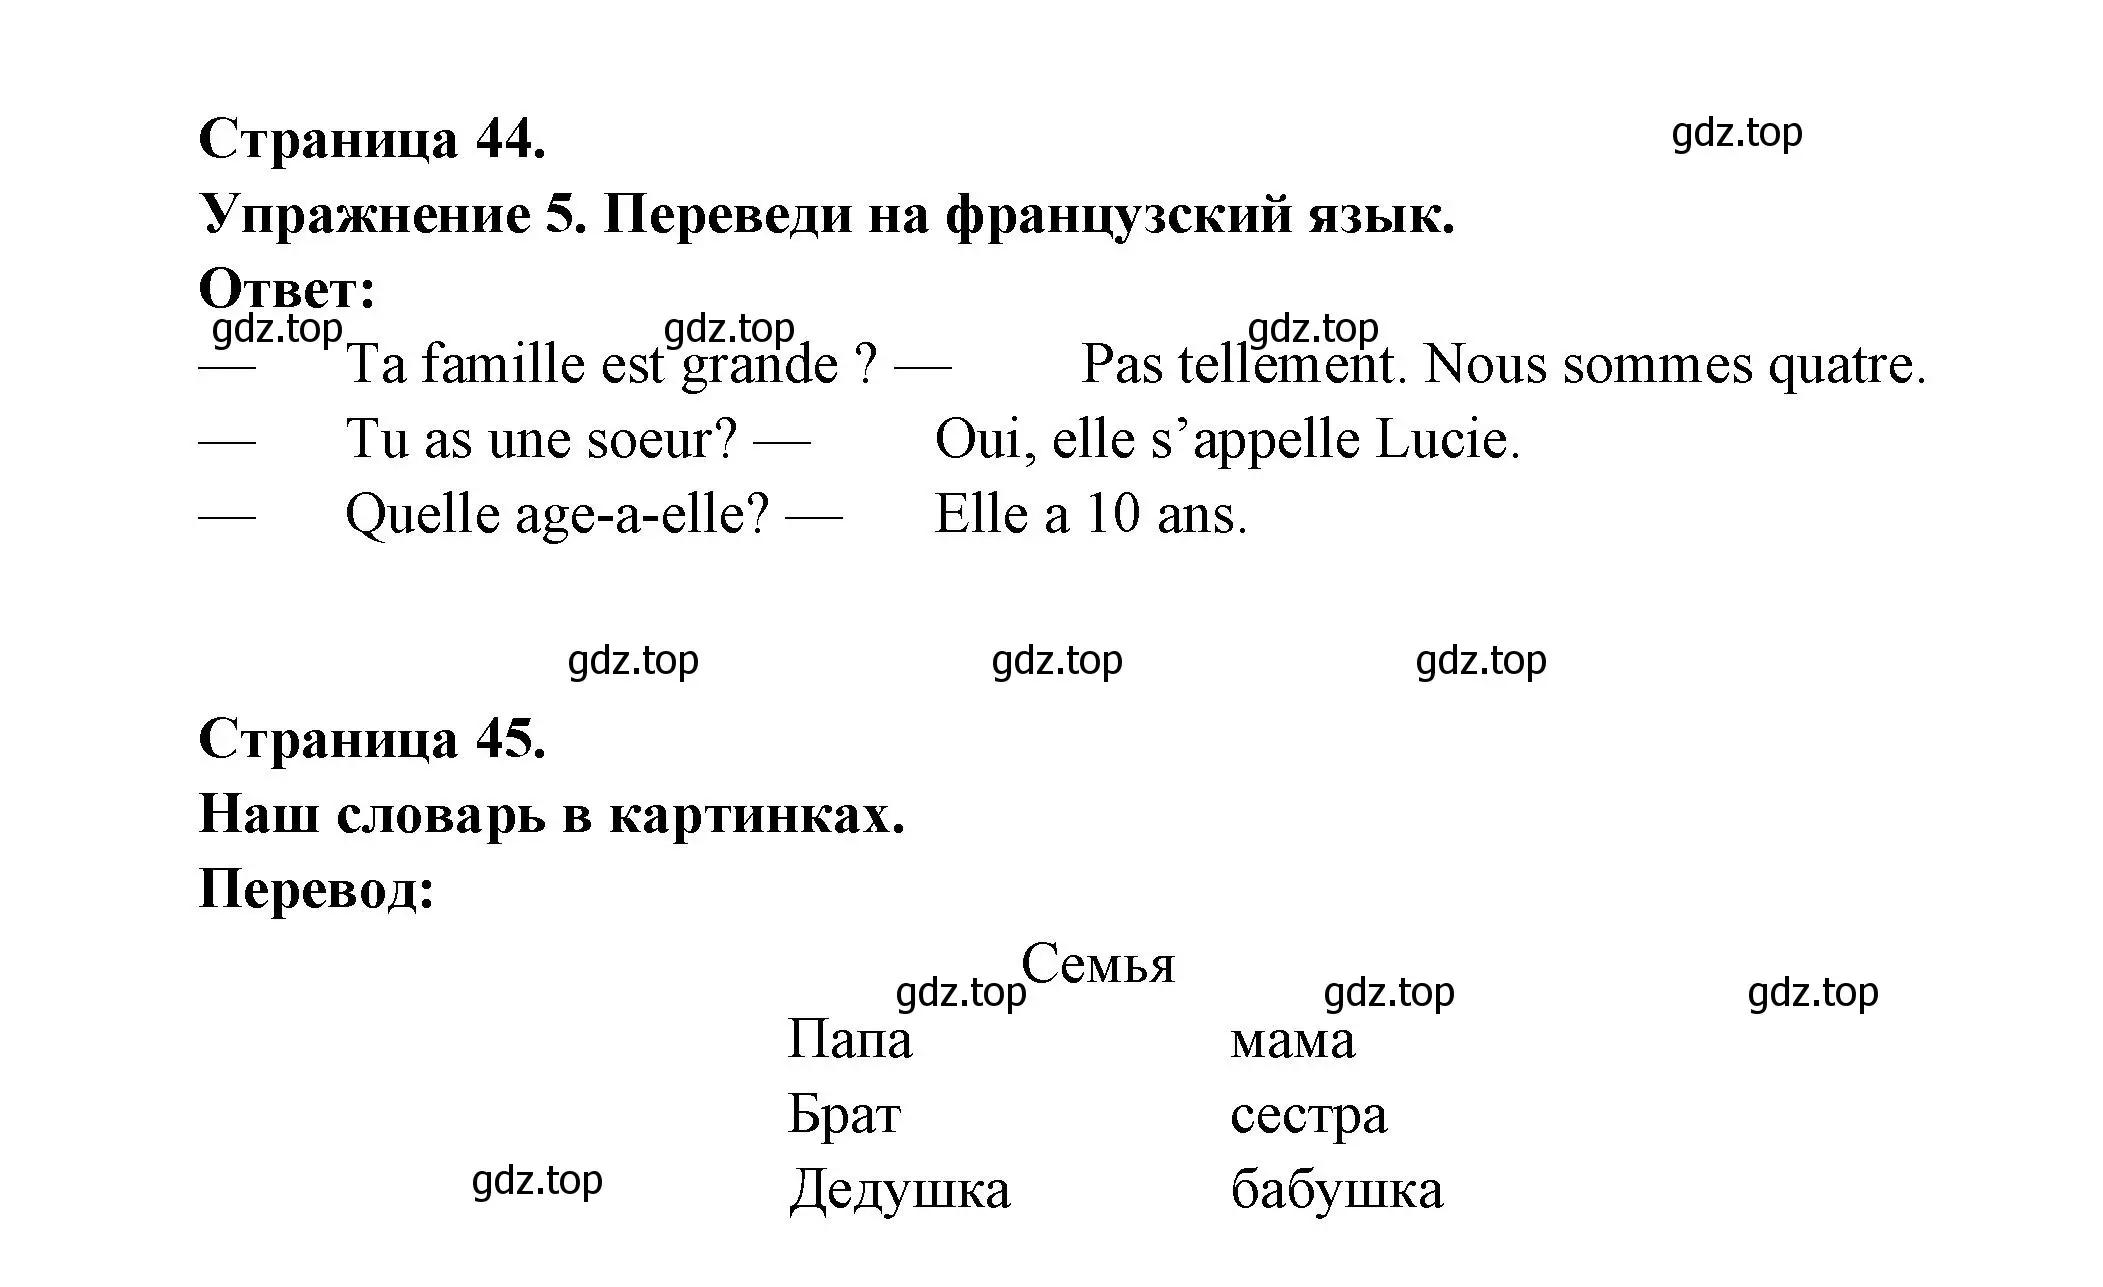 Решение номер 5 (страница 44) гдз по французскому языку 5 класс Береговская, Белосельская, учебник 1 часть